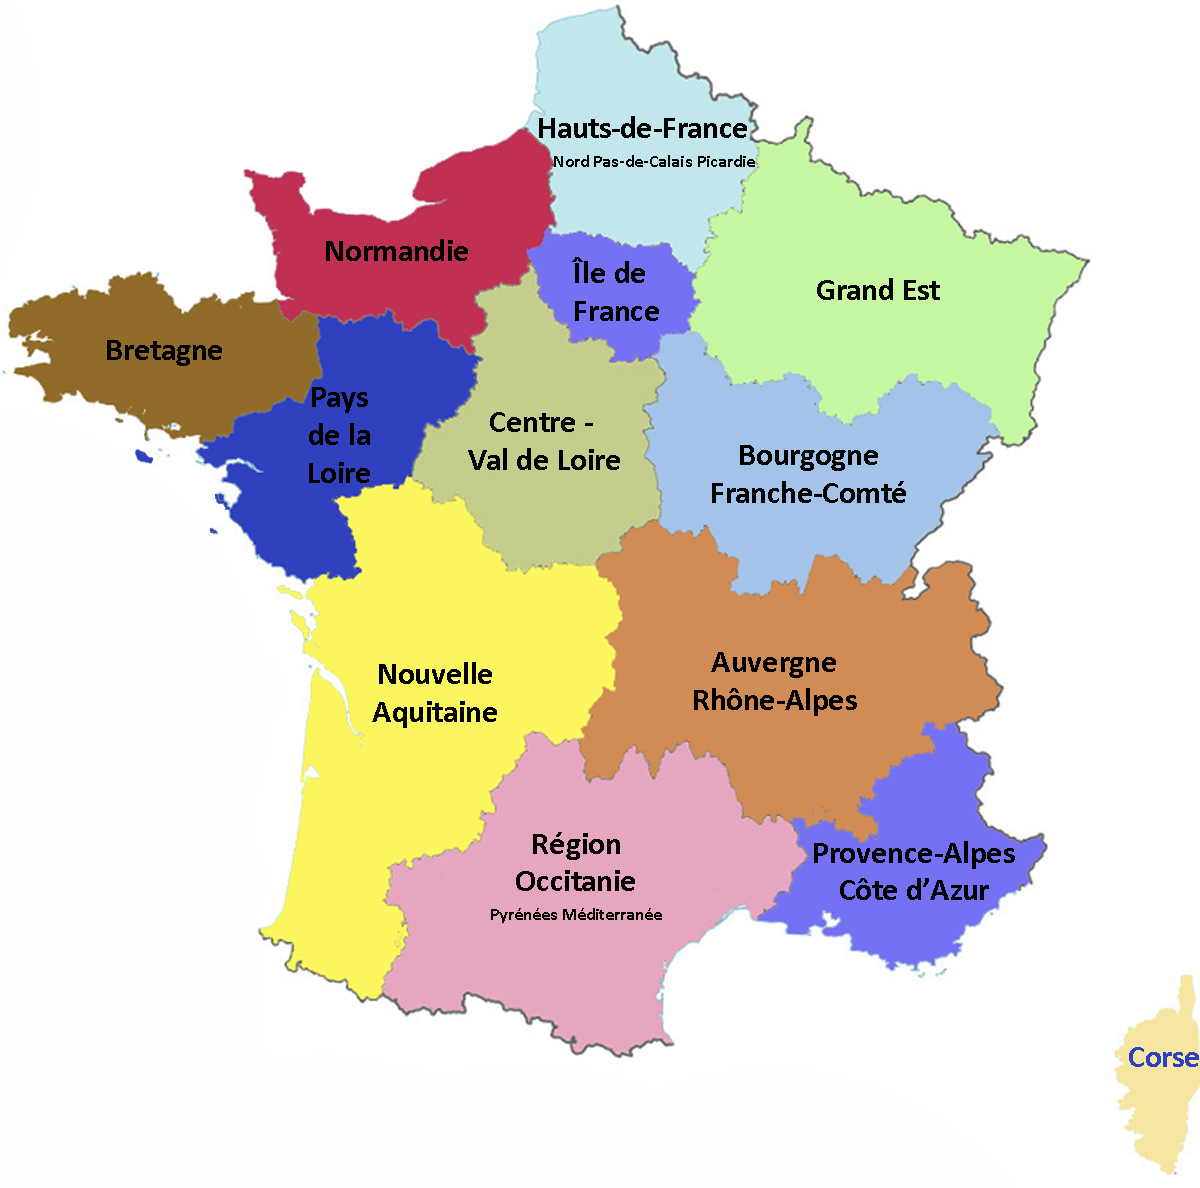 Carte de France Regions. Регионы Франции на карте. Регионы Франции на французском языке с переводом. Карта Франции на французском языке с регионами. En french